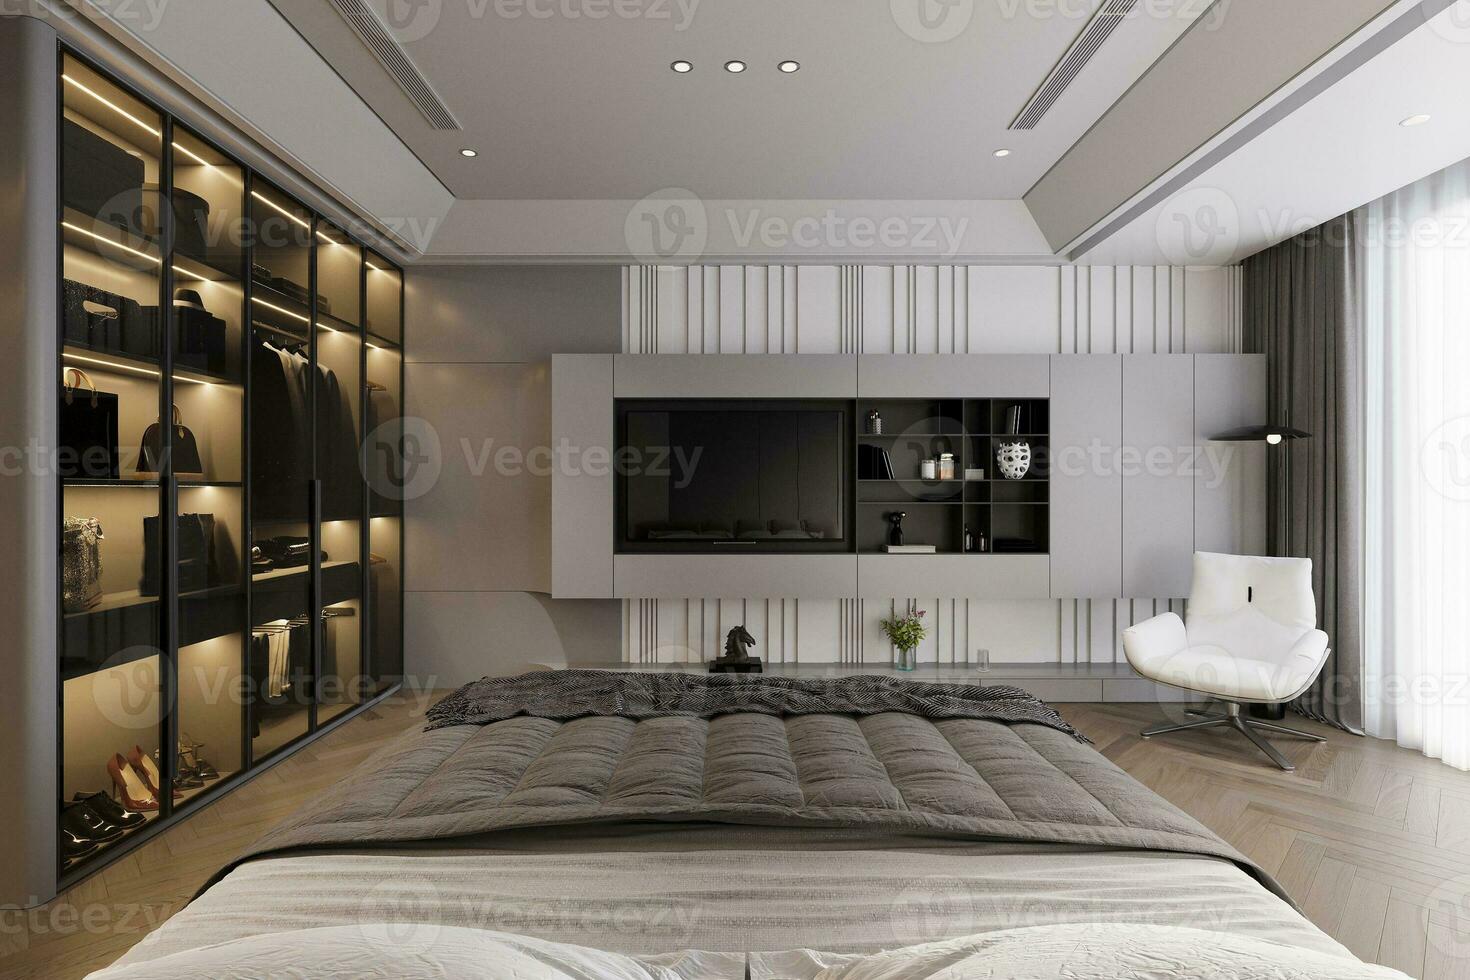 lujoso dormitorio interior con puerta de cristal armario, blanco techo, 3d representación foto